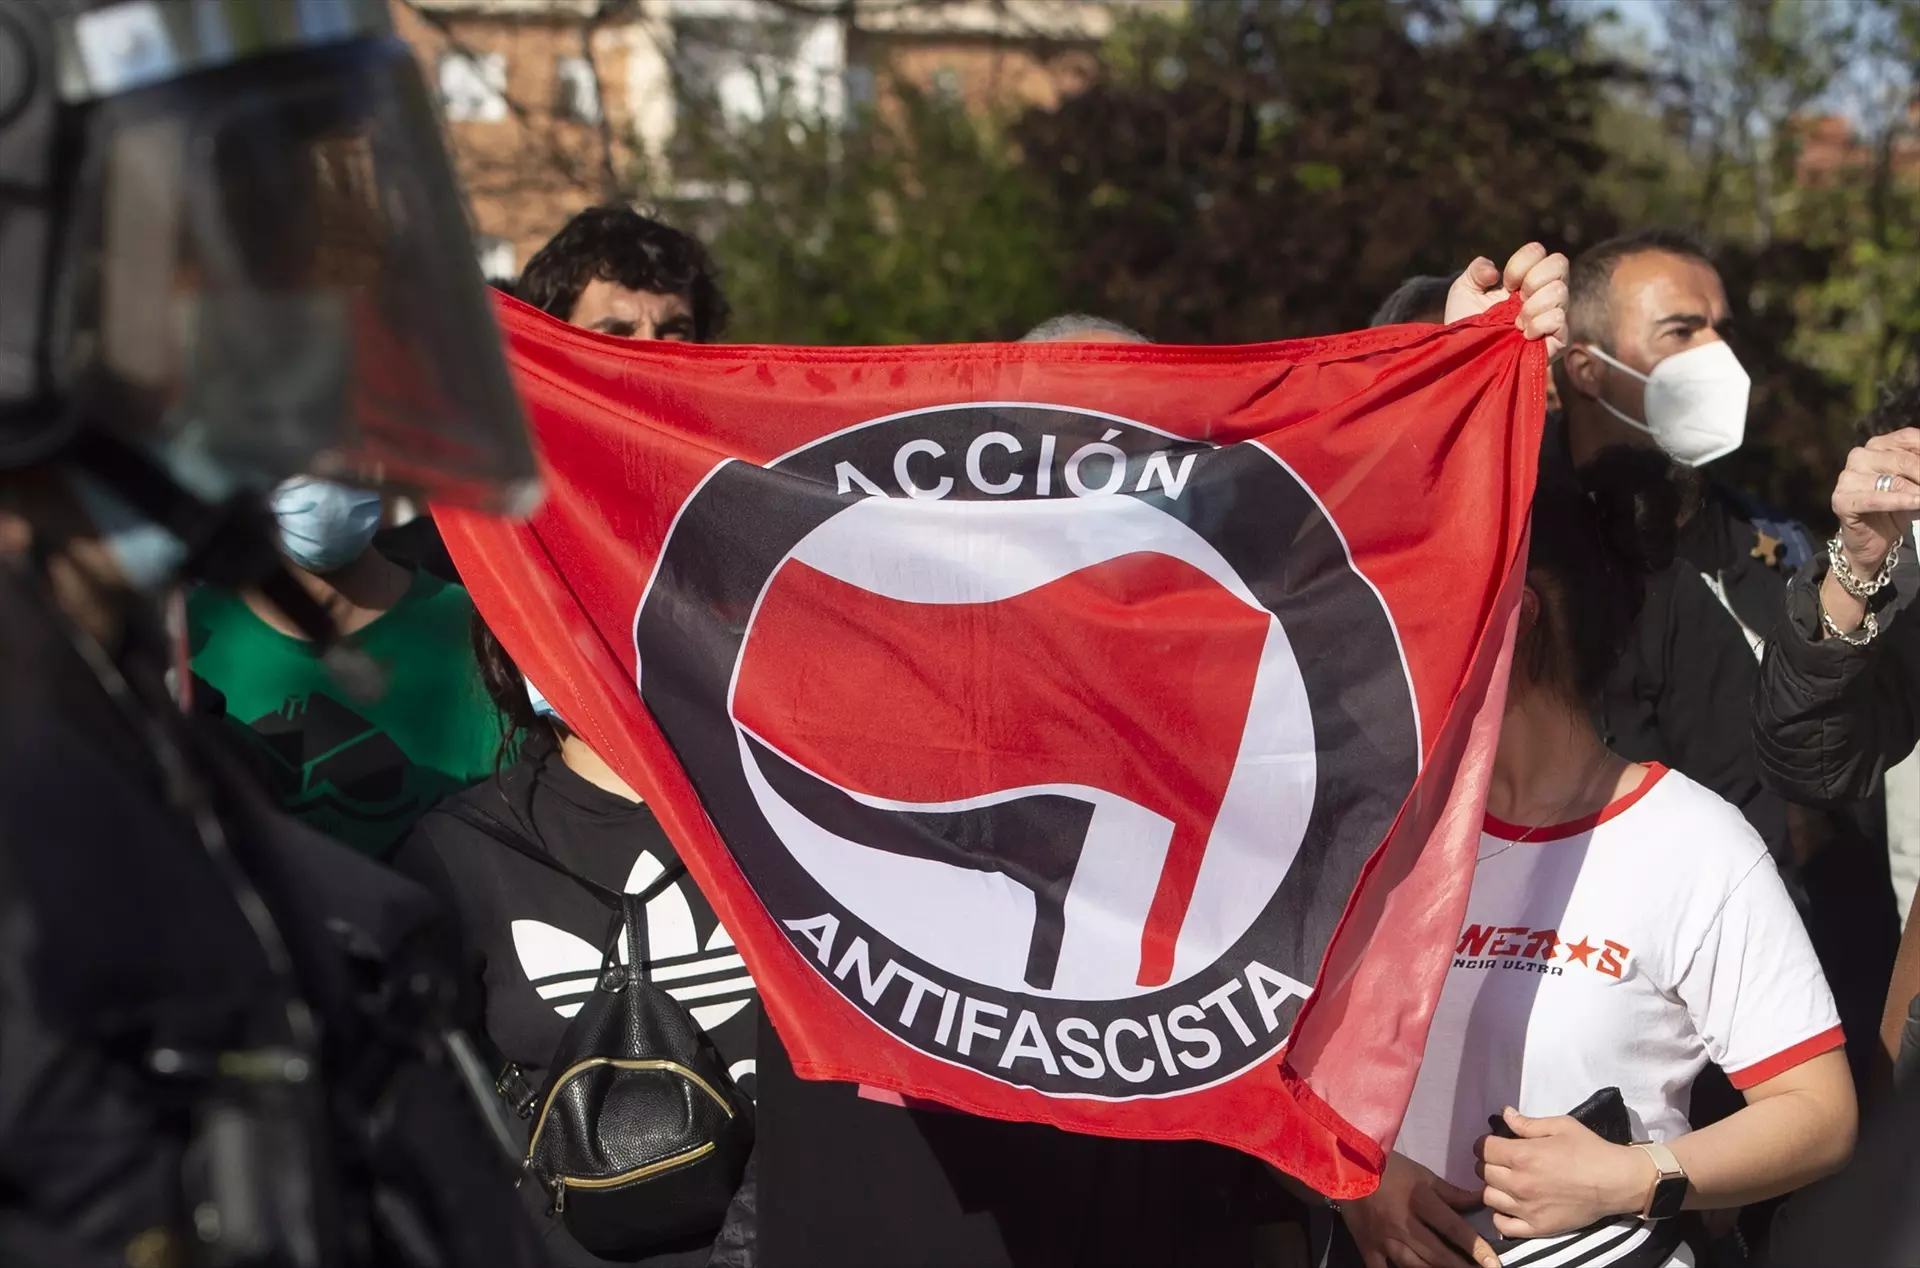 Varias personas participan en la concentración convocada en Vallecas contra Vox, a 7 de abril de 2021, en la Plaza de la Constitución de Vallecas, Madrid. — Alberto Ortega / Europa Press